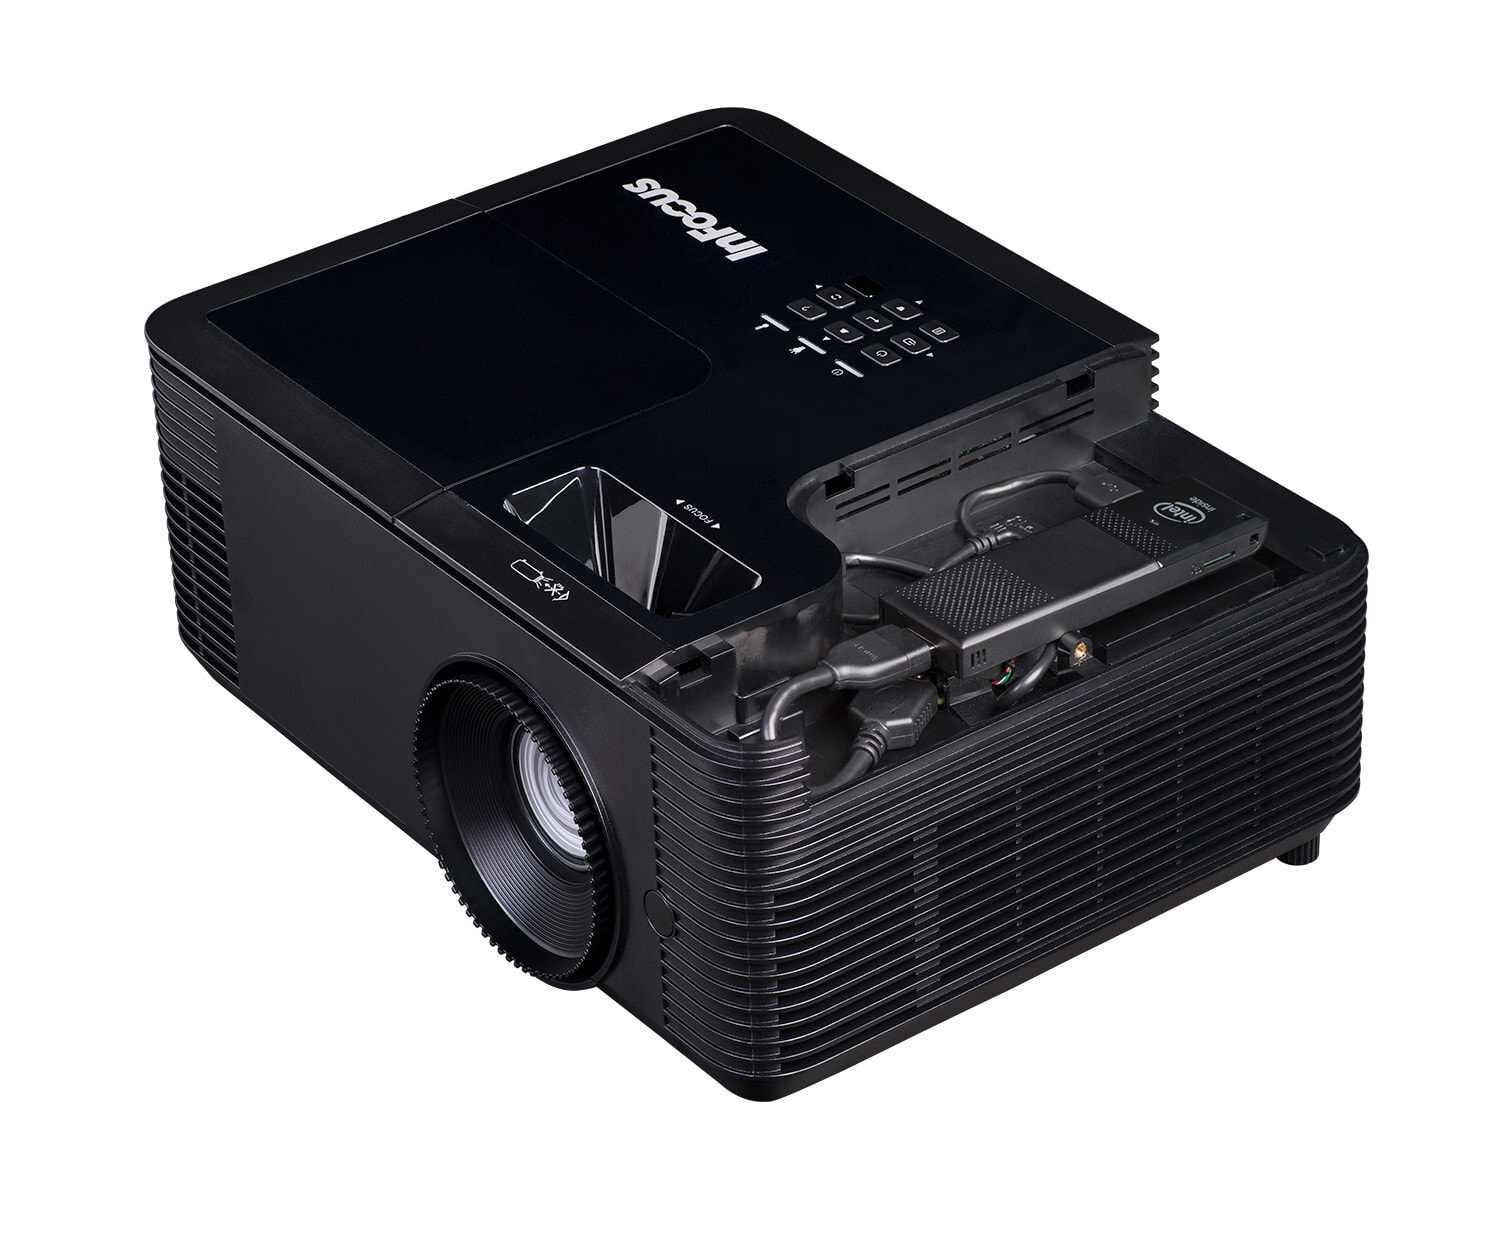 Мультимедиа-проектор Infocus IN138HD 1080P 4000 лм DLP 1080p (1920x1080) 3D Настольный проектор Черный